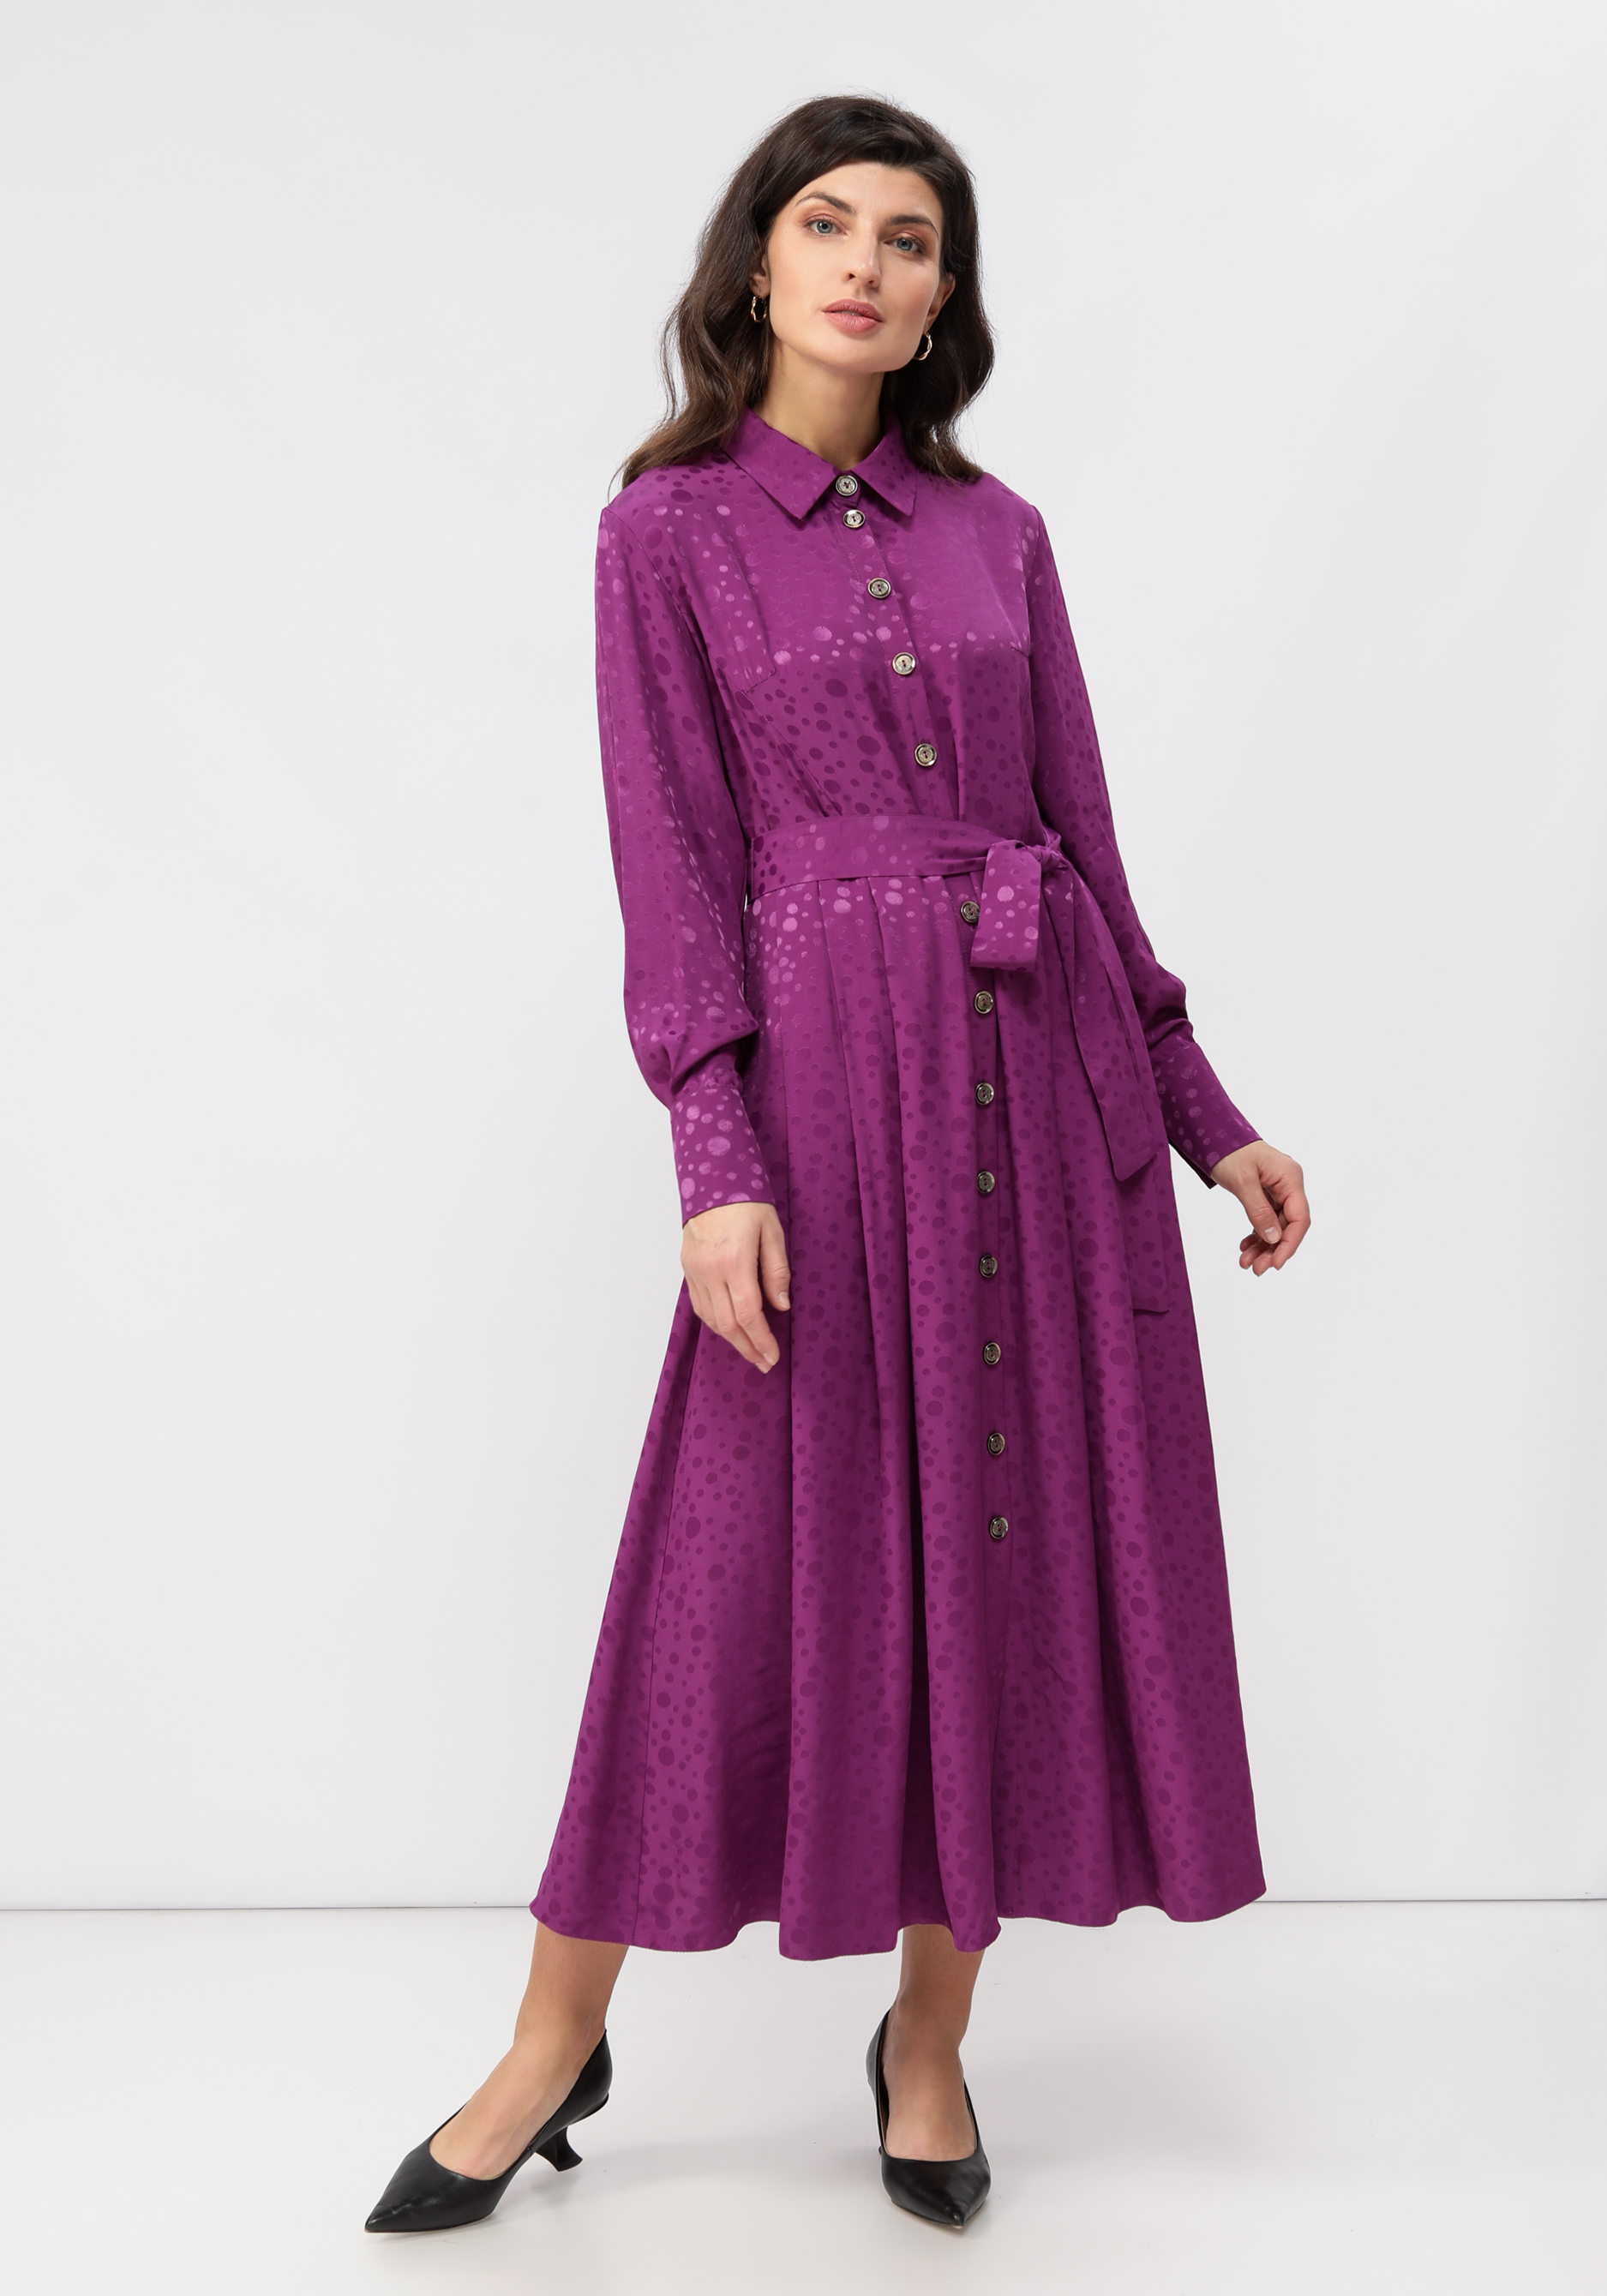 Платье на пуговицах со складками на юбке Vivienne Mare, цвет фиолетовый, размер 50 - фото 1